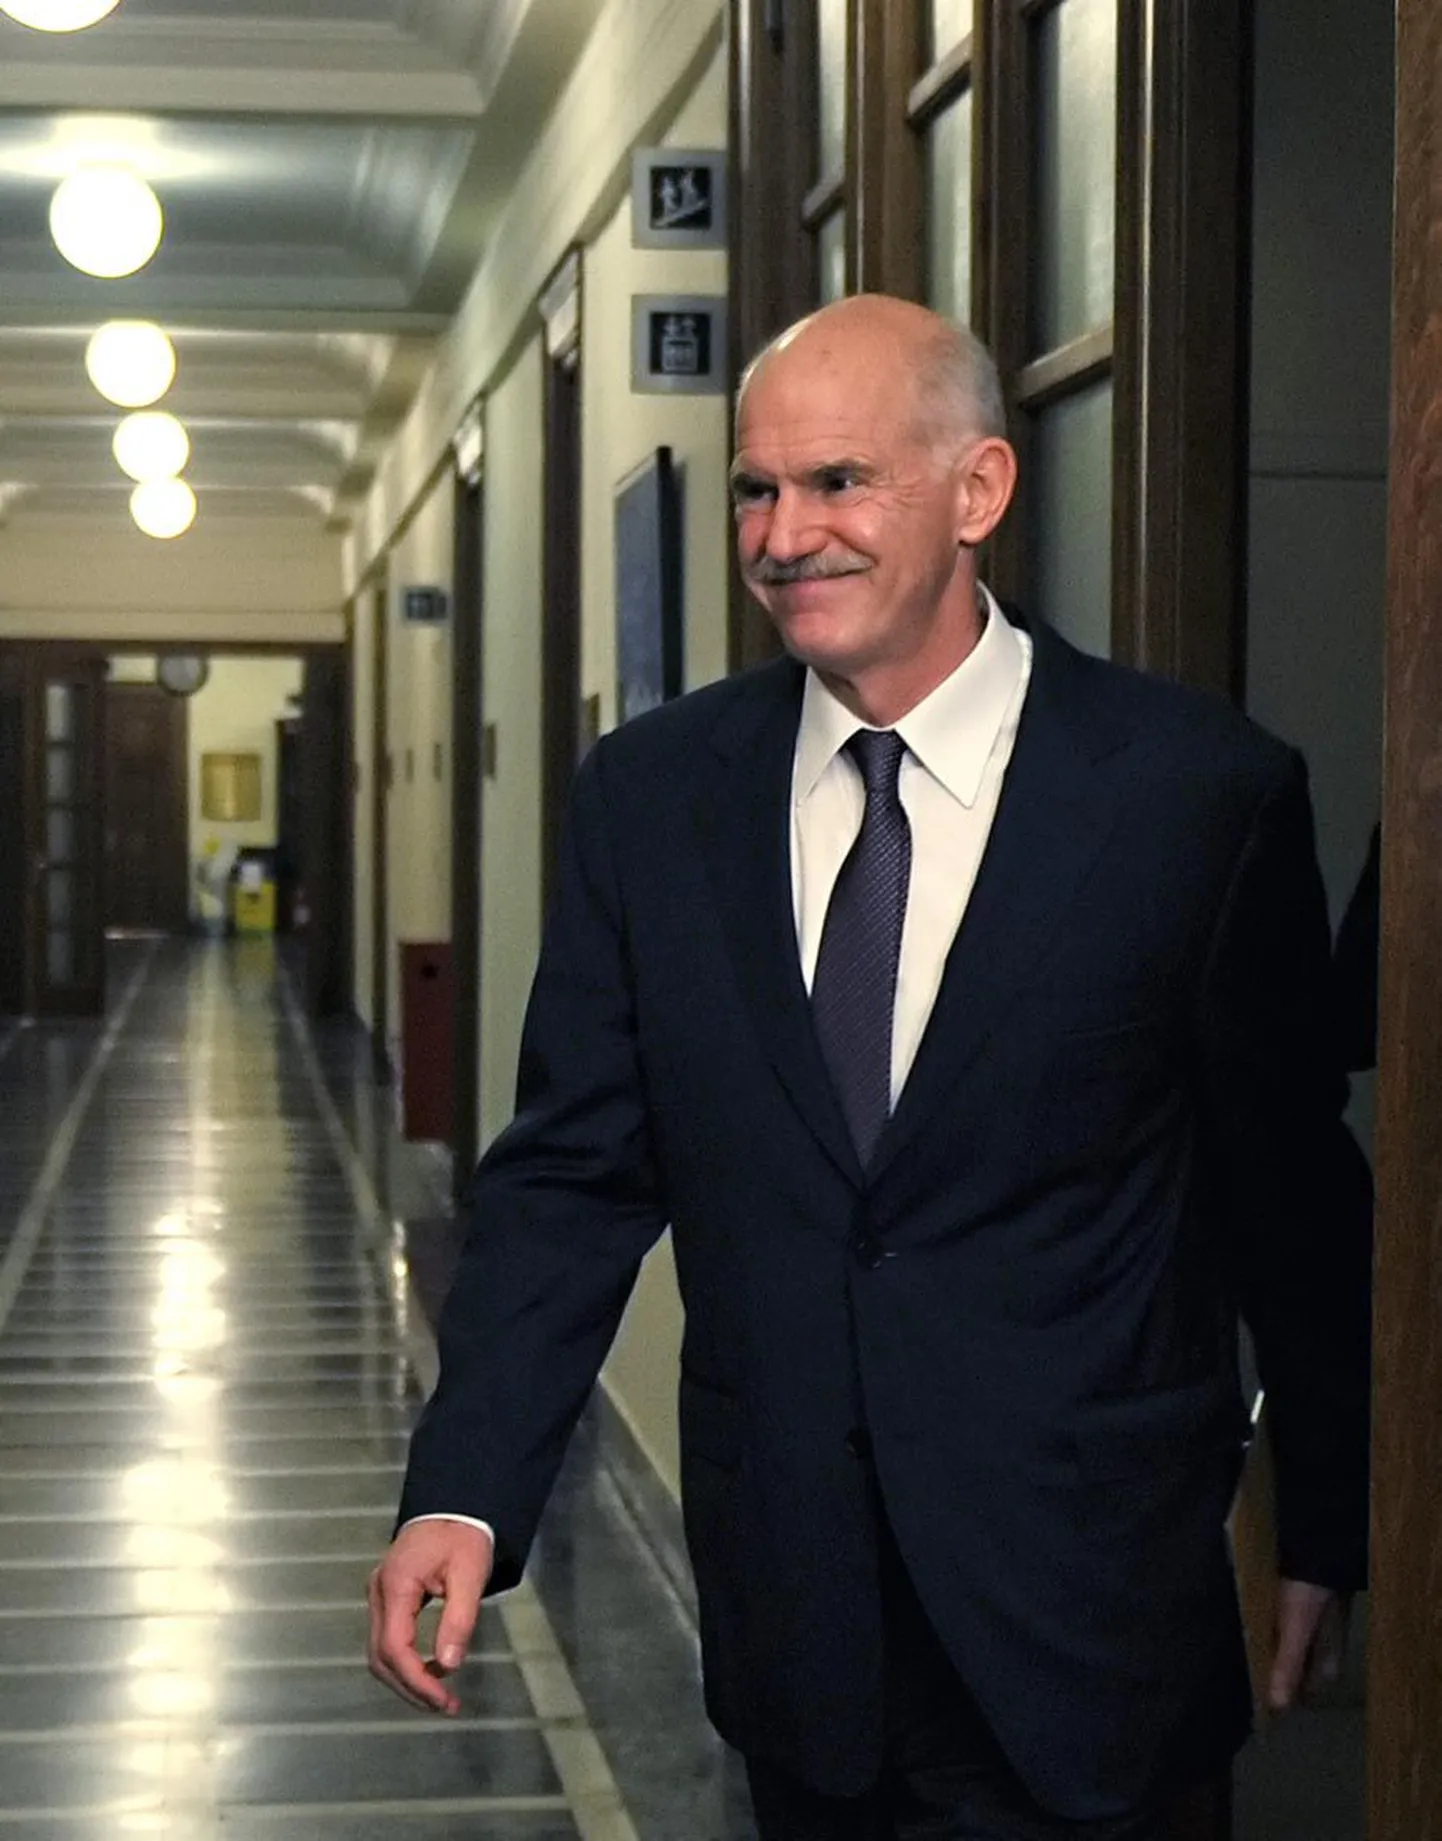 Kreeka peaministri Georgios Papandreou plaan abipakett     rahvahääletusele panna üllatas kõiki.